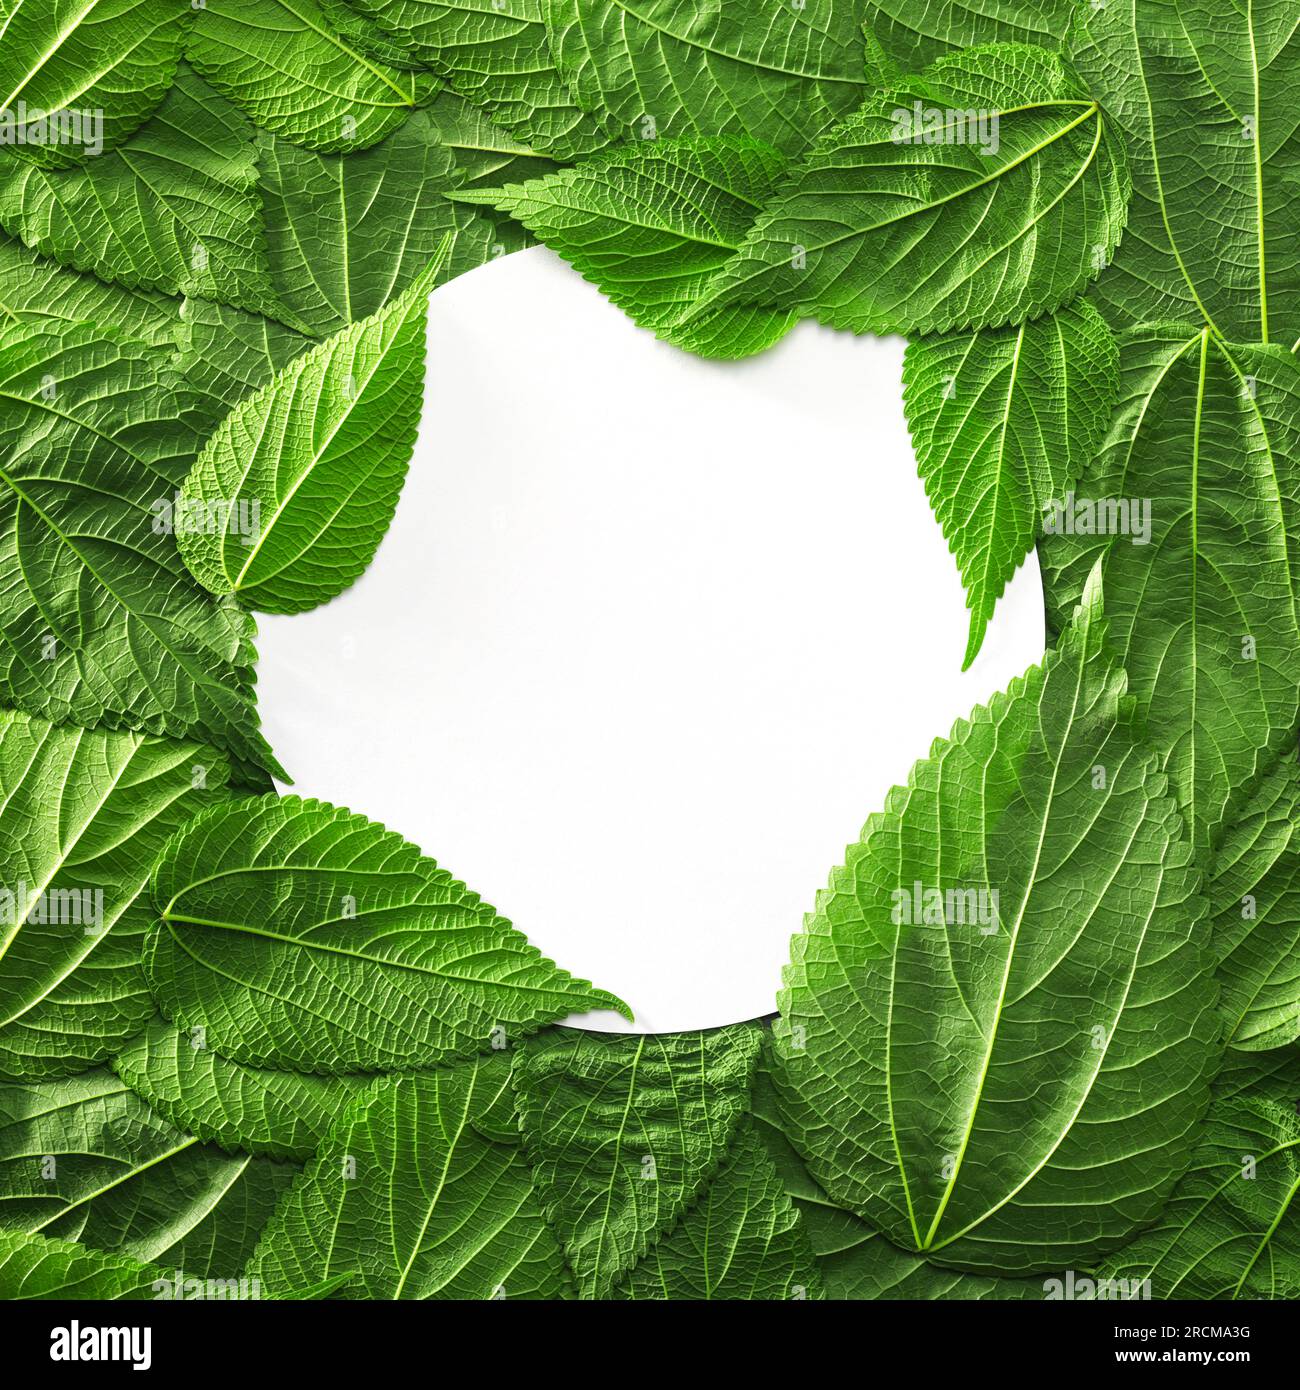 Blatthintergrund mit hellgrünen Pflanzenblättern. Umweltfreundlicher Hintergrund oder Earth Day Hintergrund mit leerer weißer Karte für Kopierbereich oder Produktpl Stockfoto